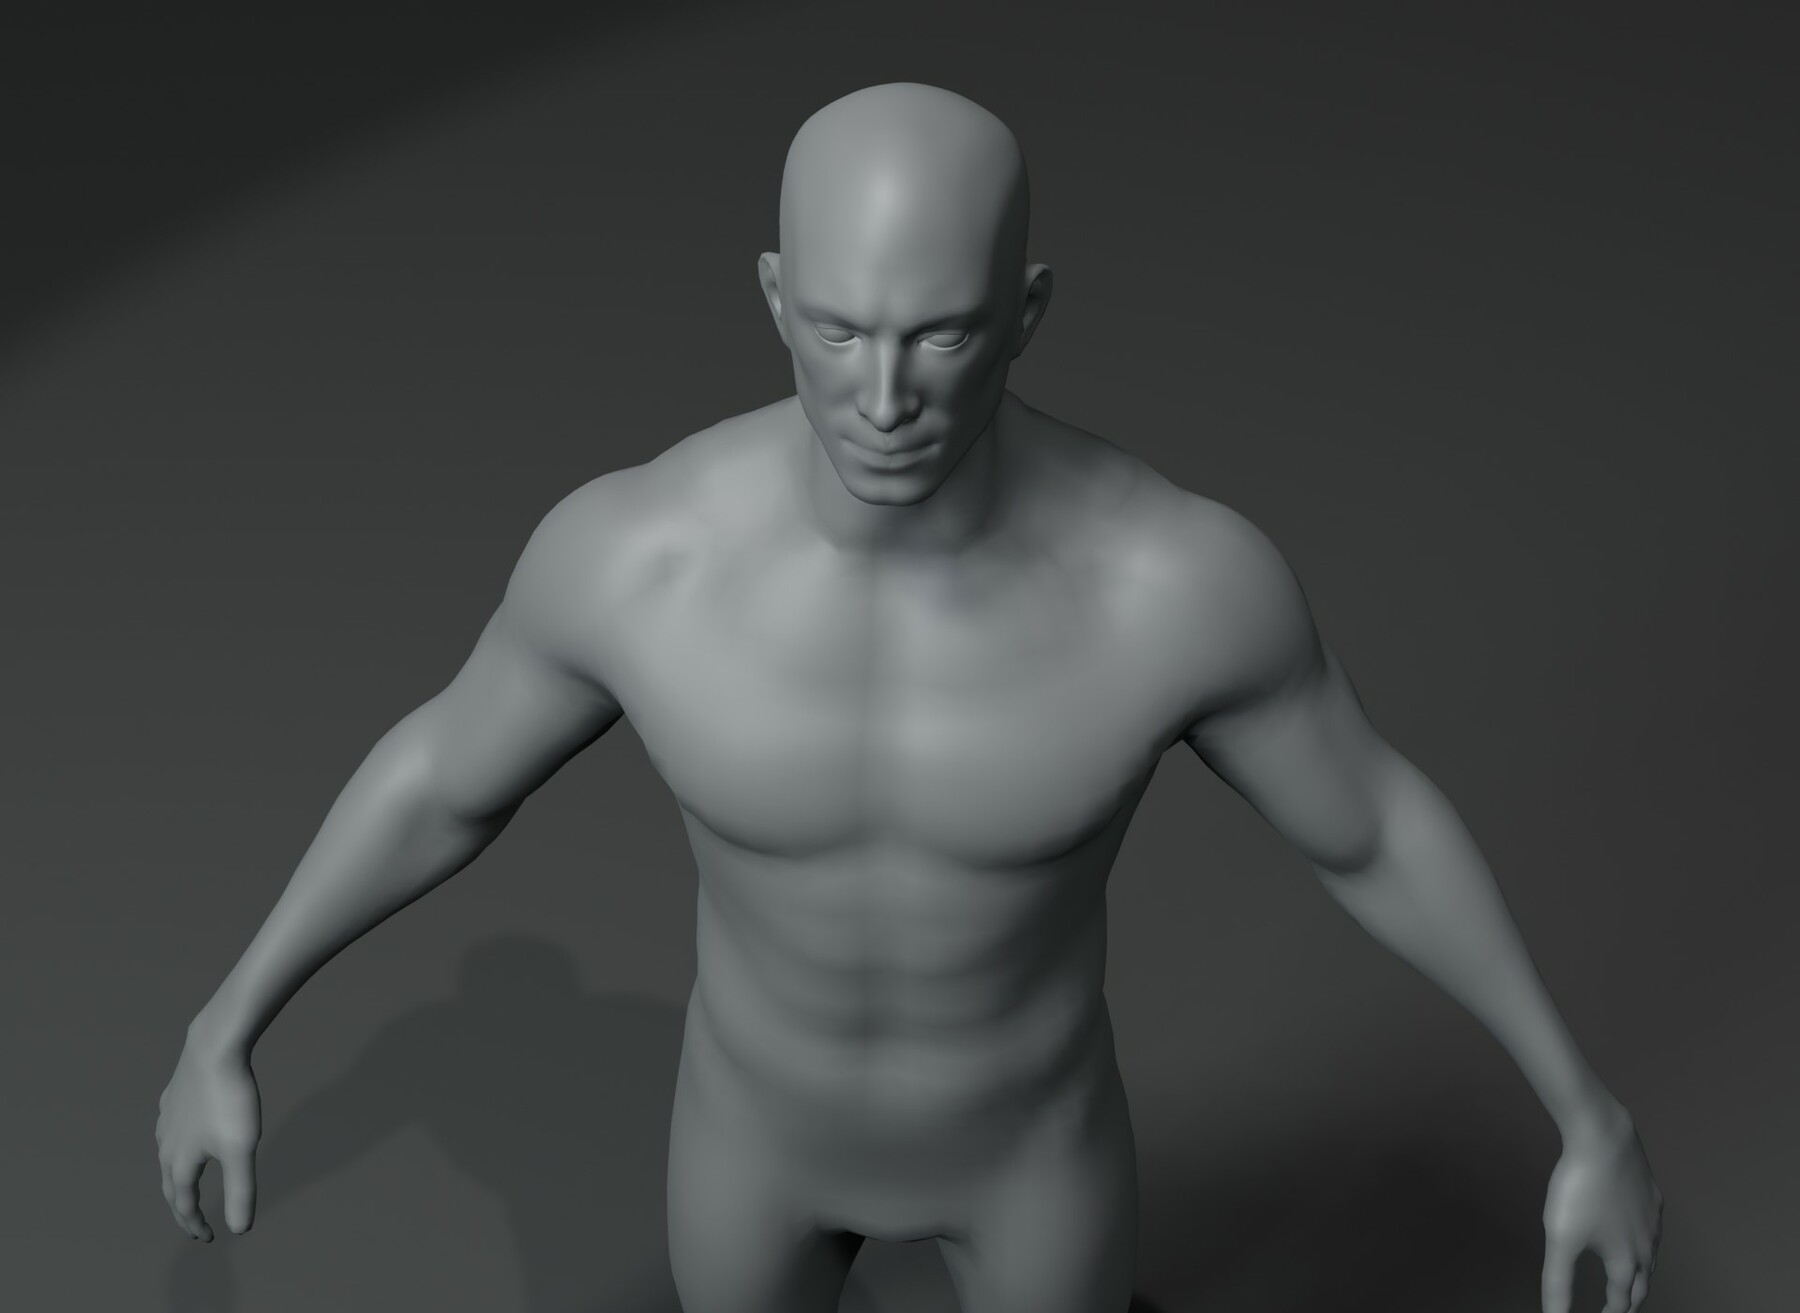 ArtStation - Male and Female Body Base Mesh 3D Model 20k Polygons